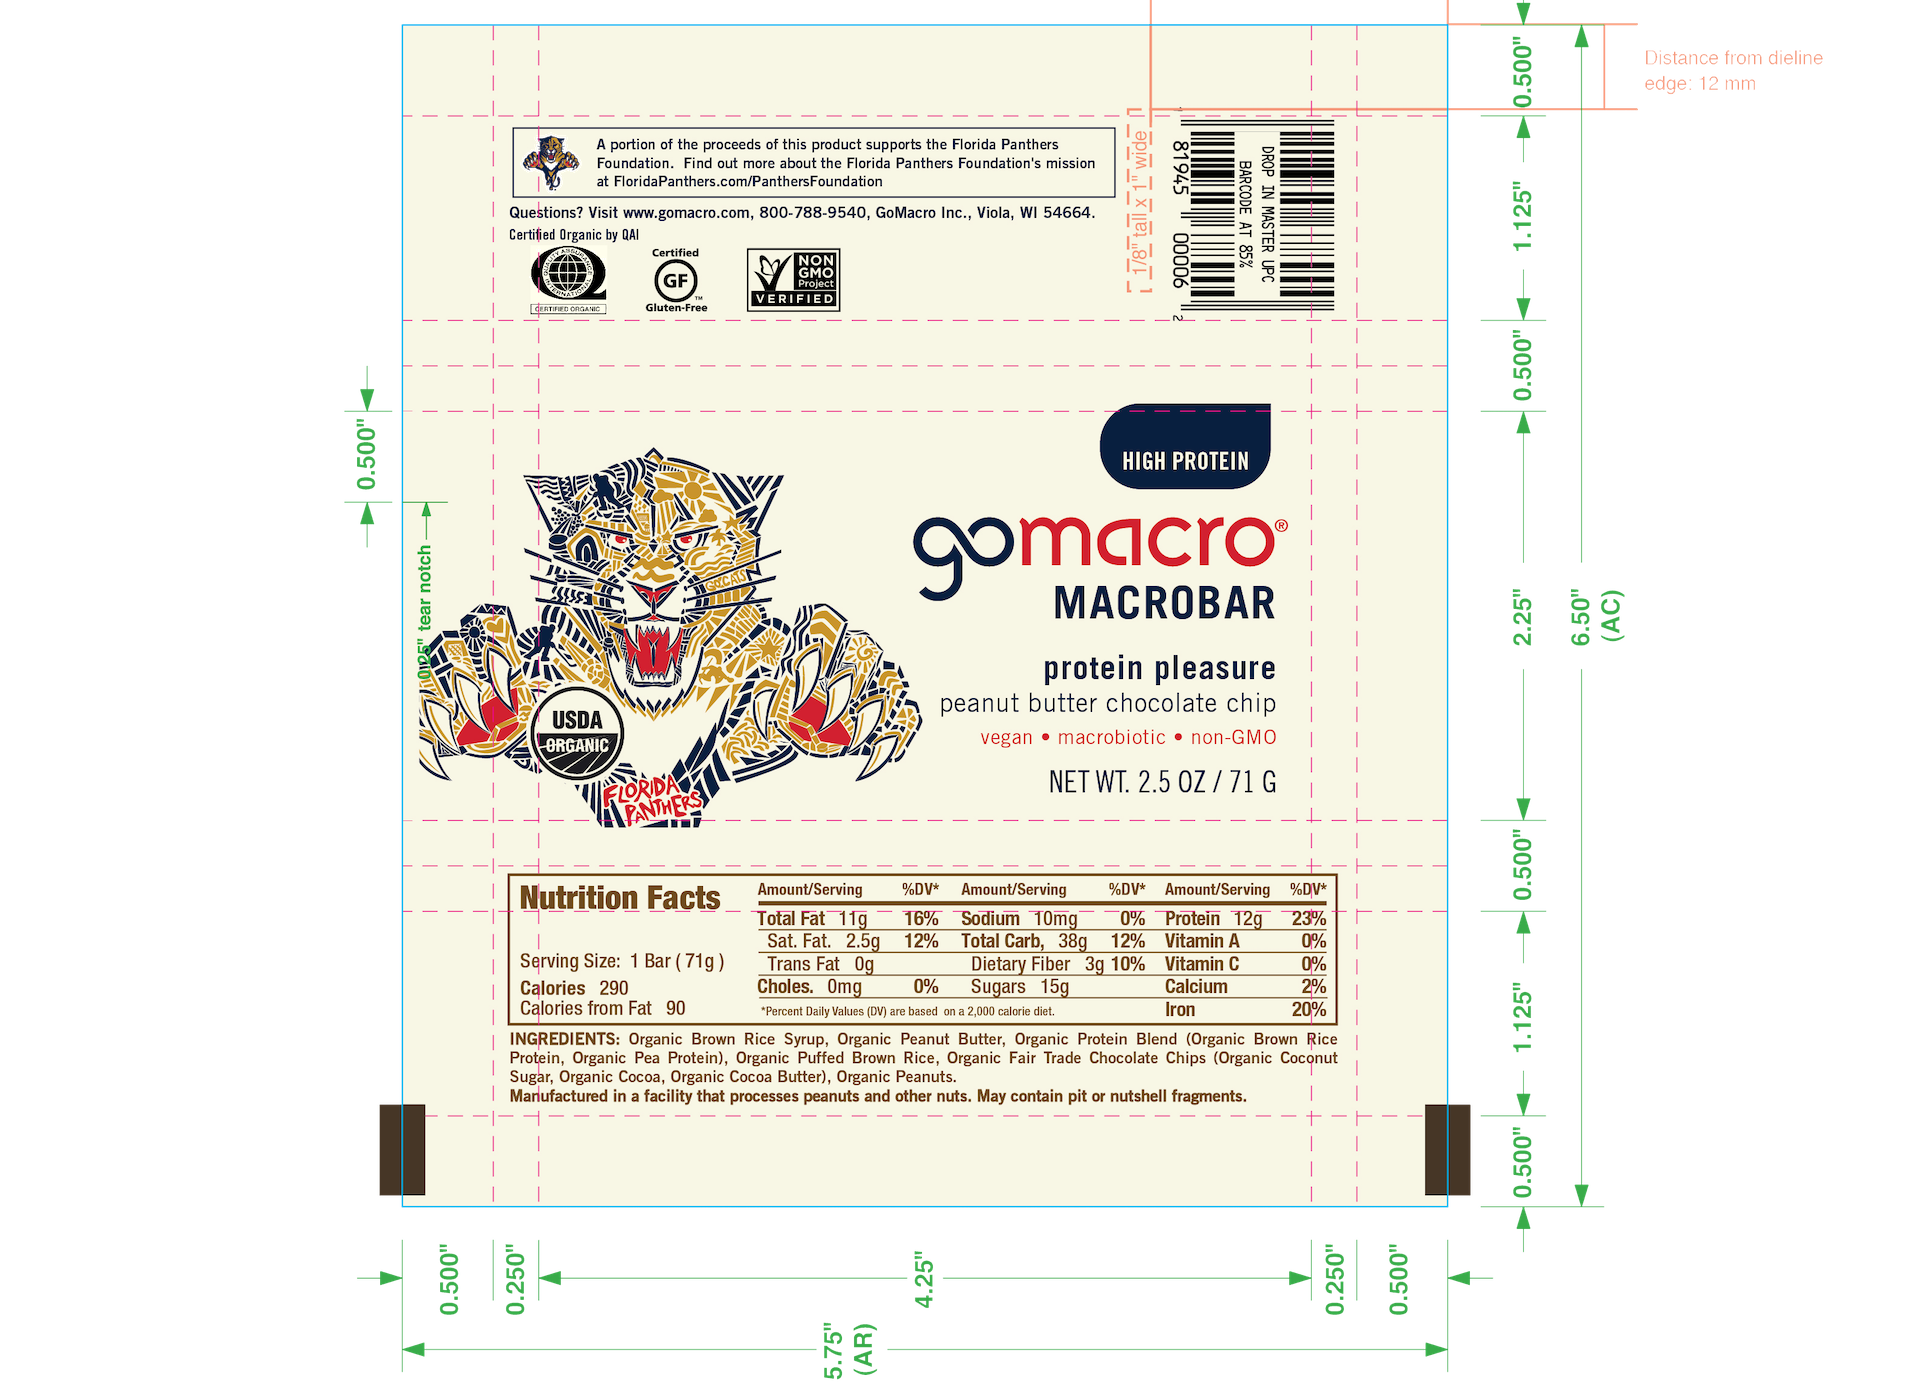 Go Macro Macrobar package label